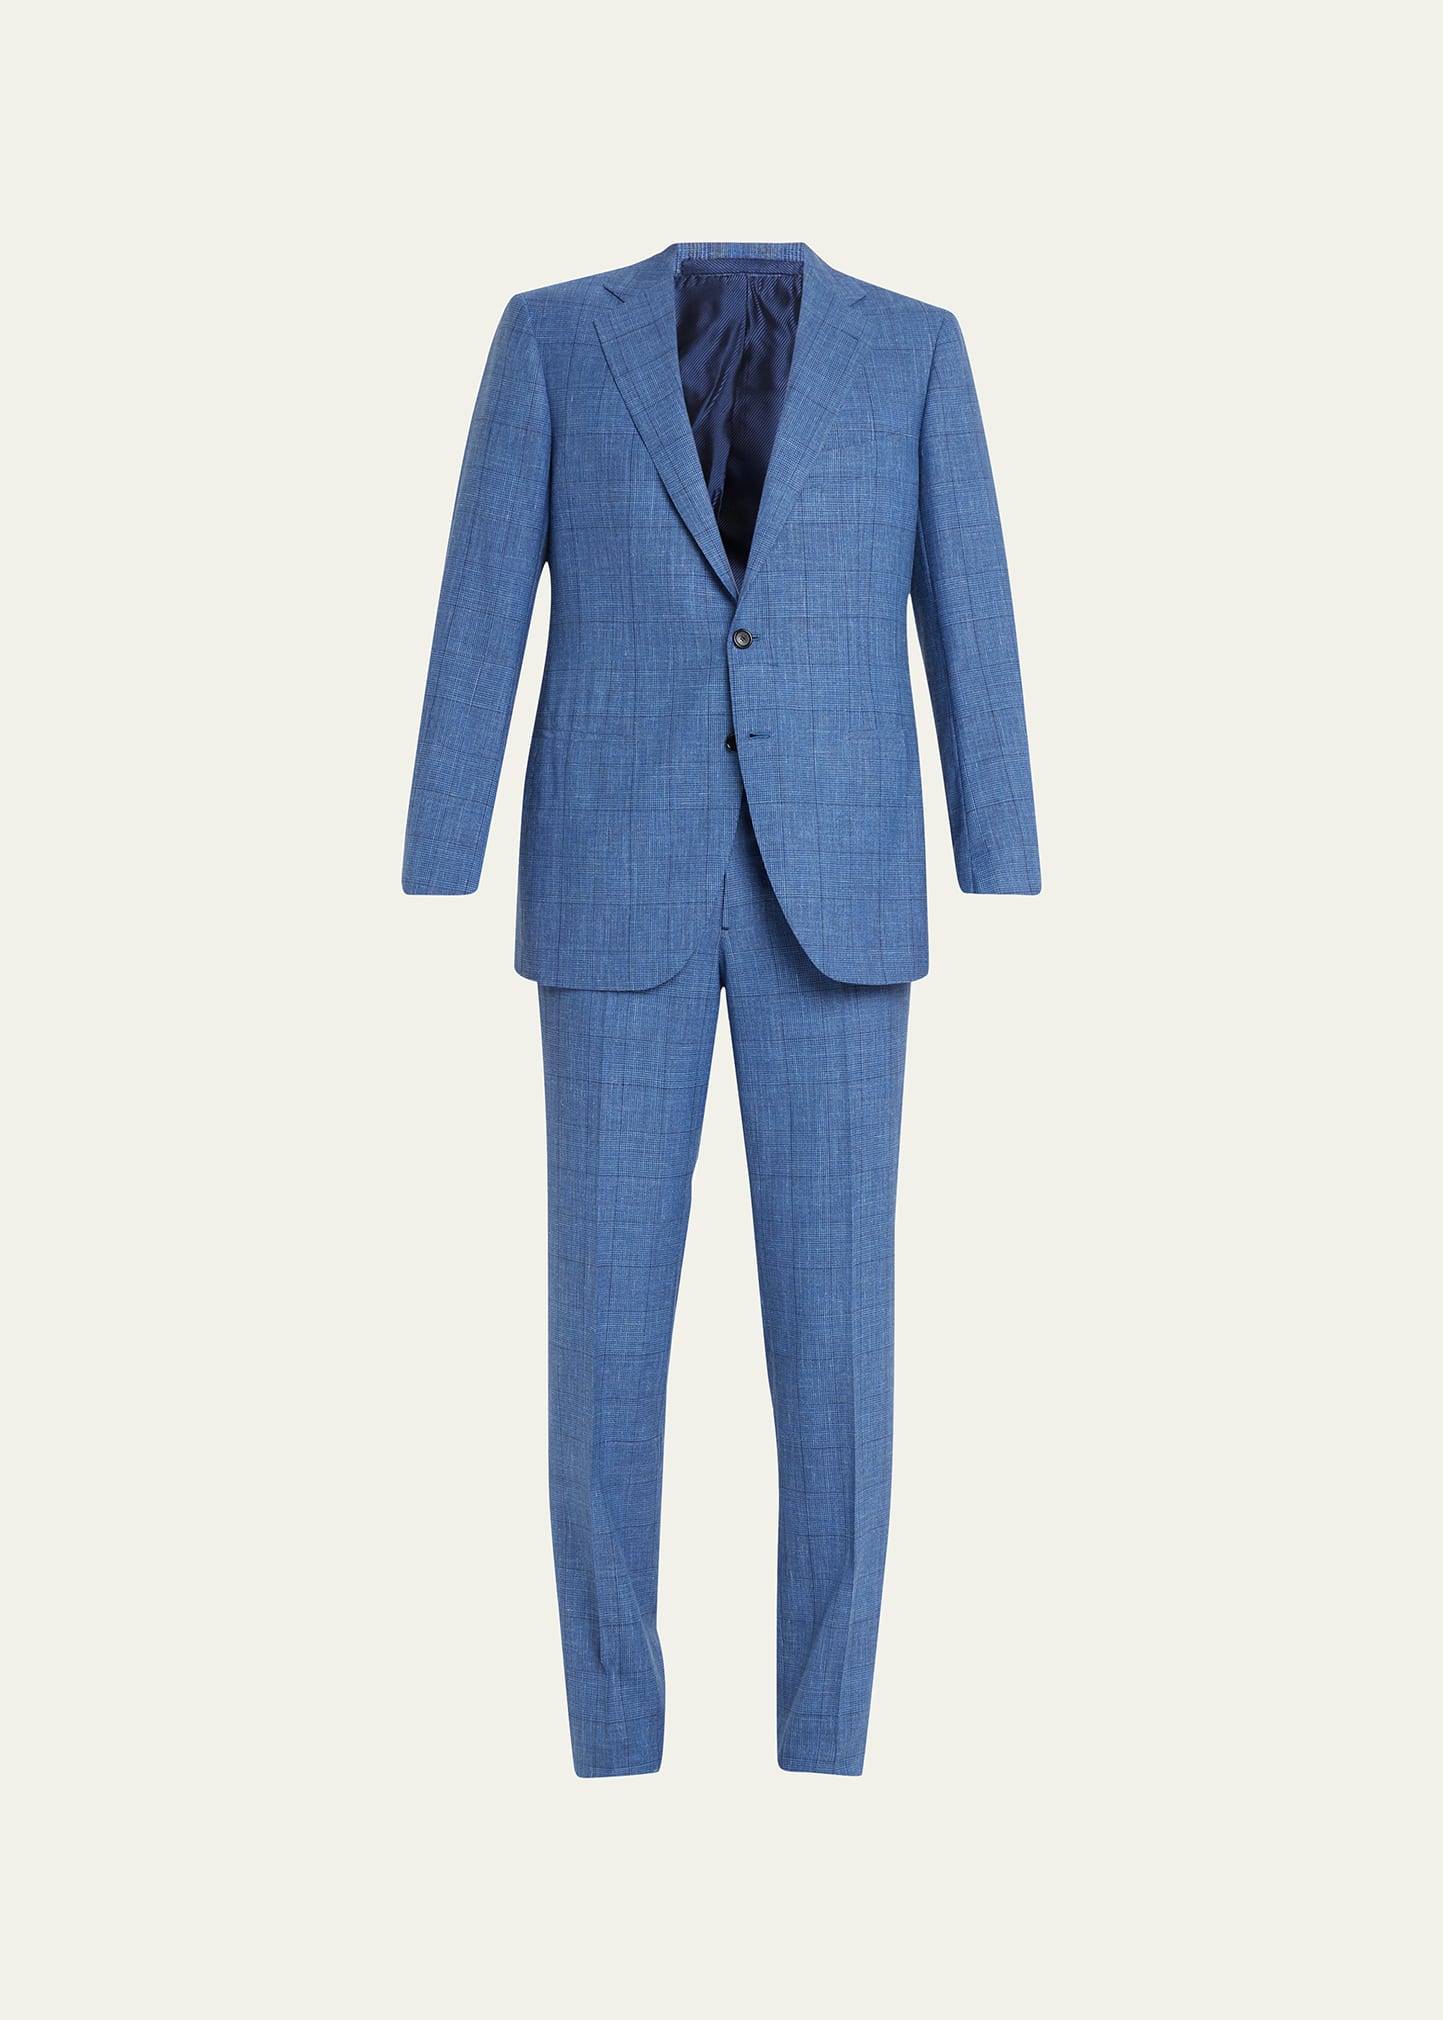 Cesare Attolini Men's Glen Plaid Wool-Blend Suit